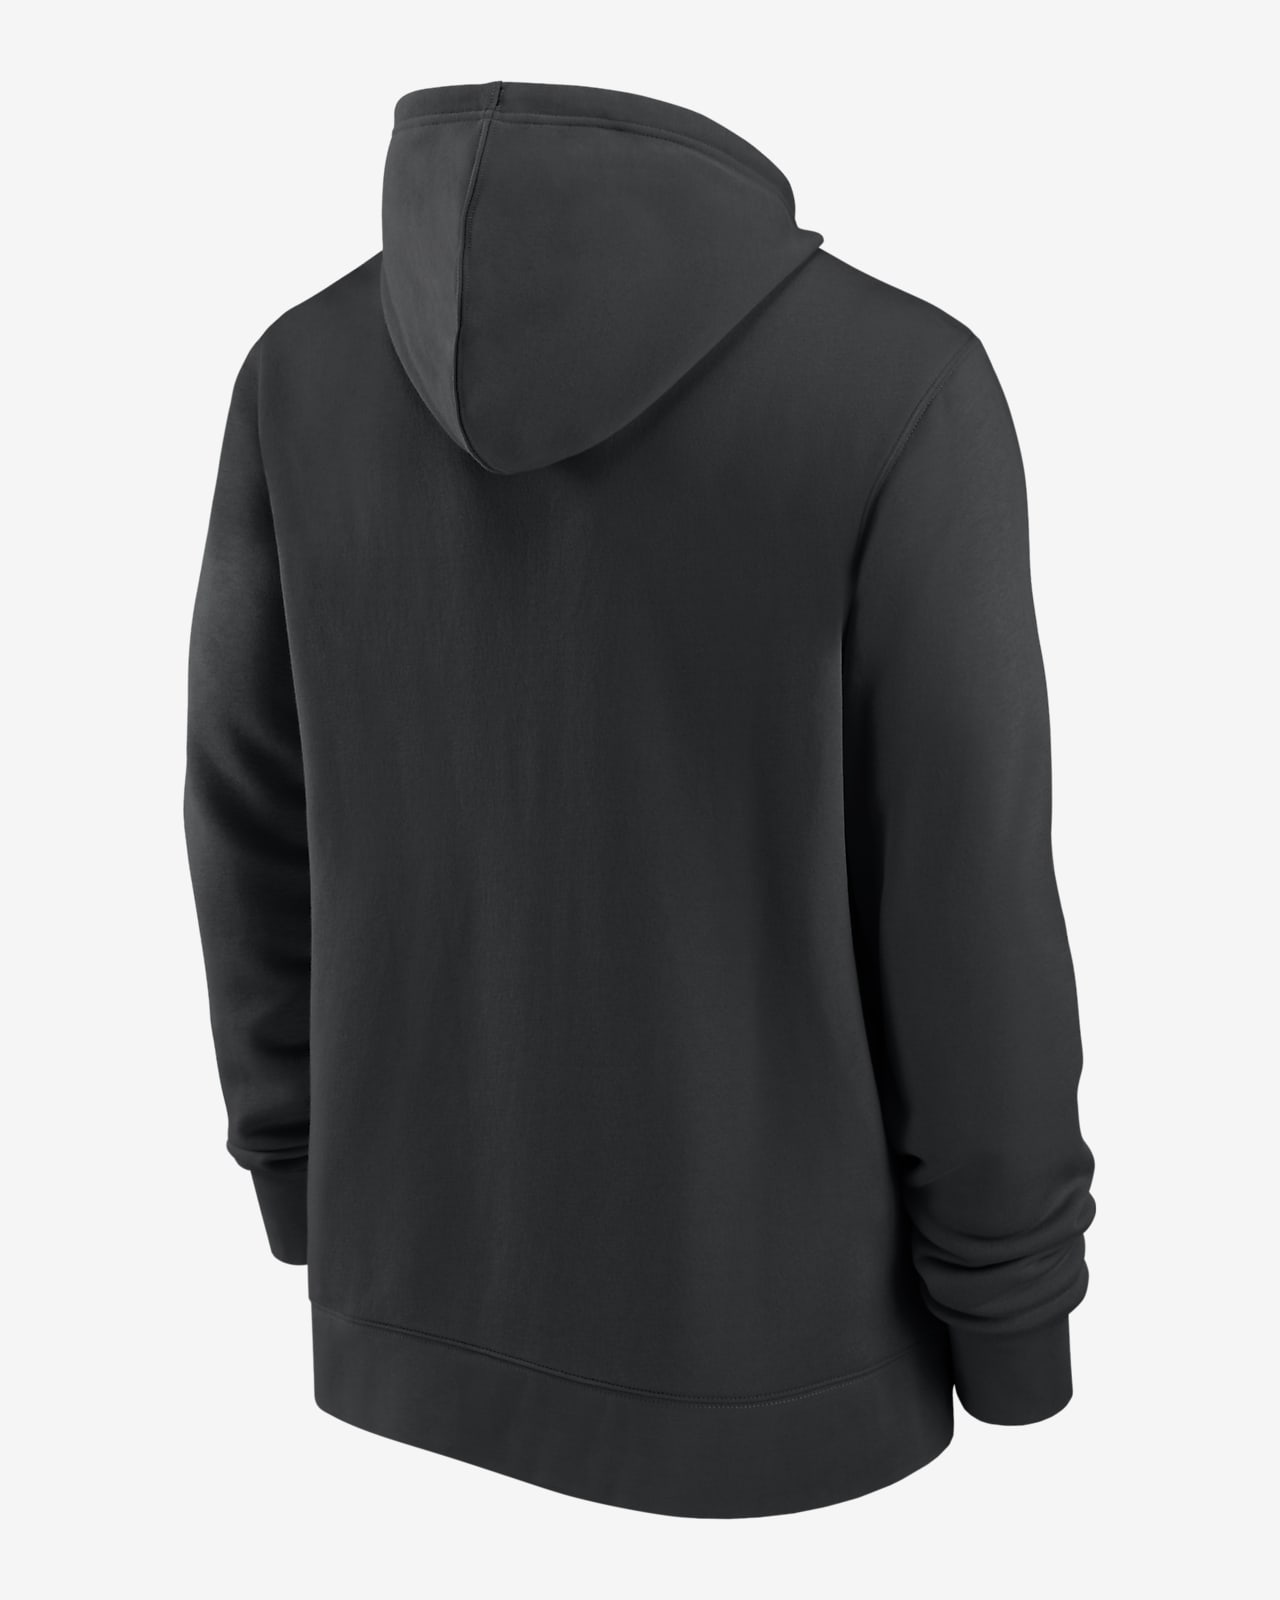 las vegas raiders zipper hoodie